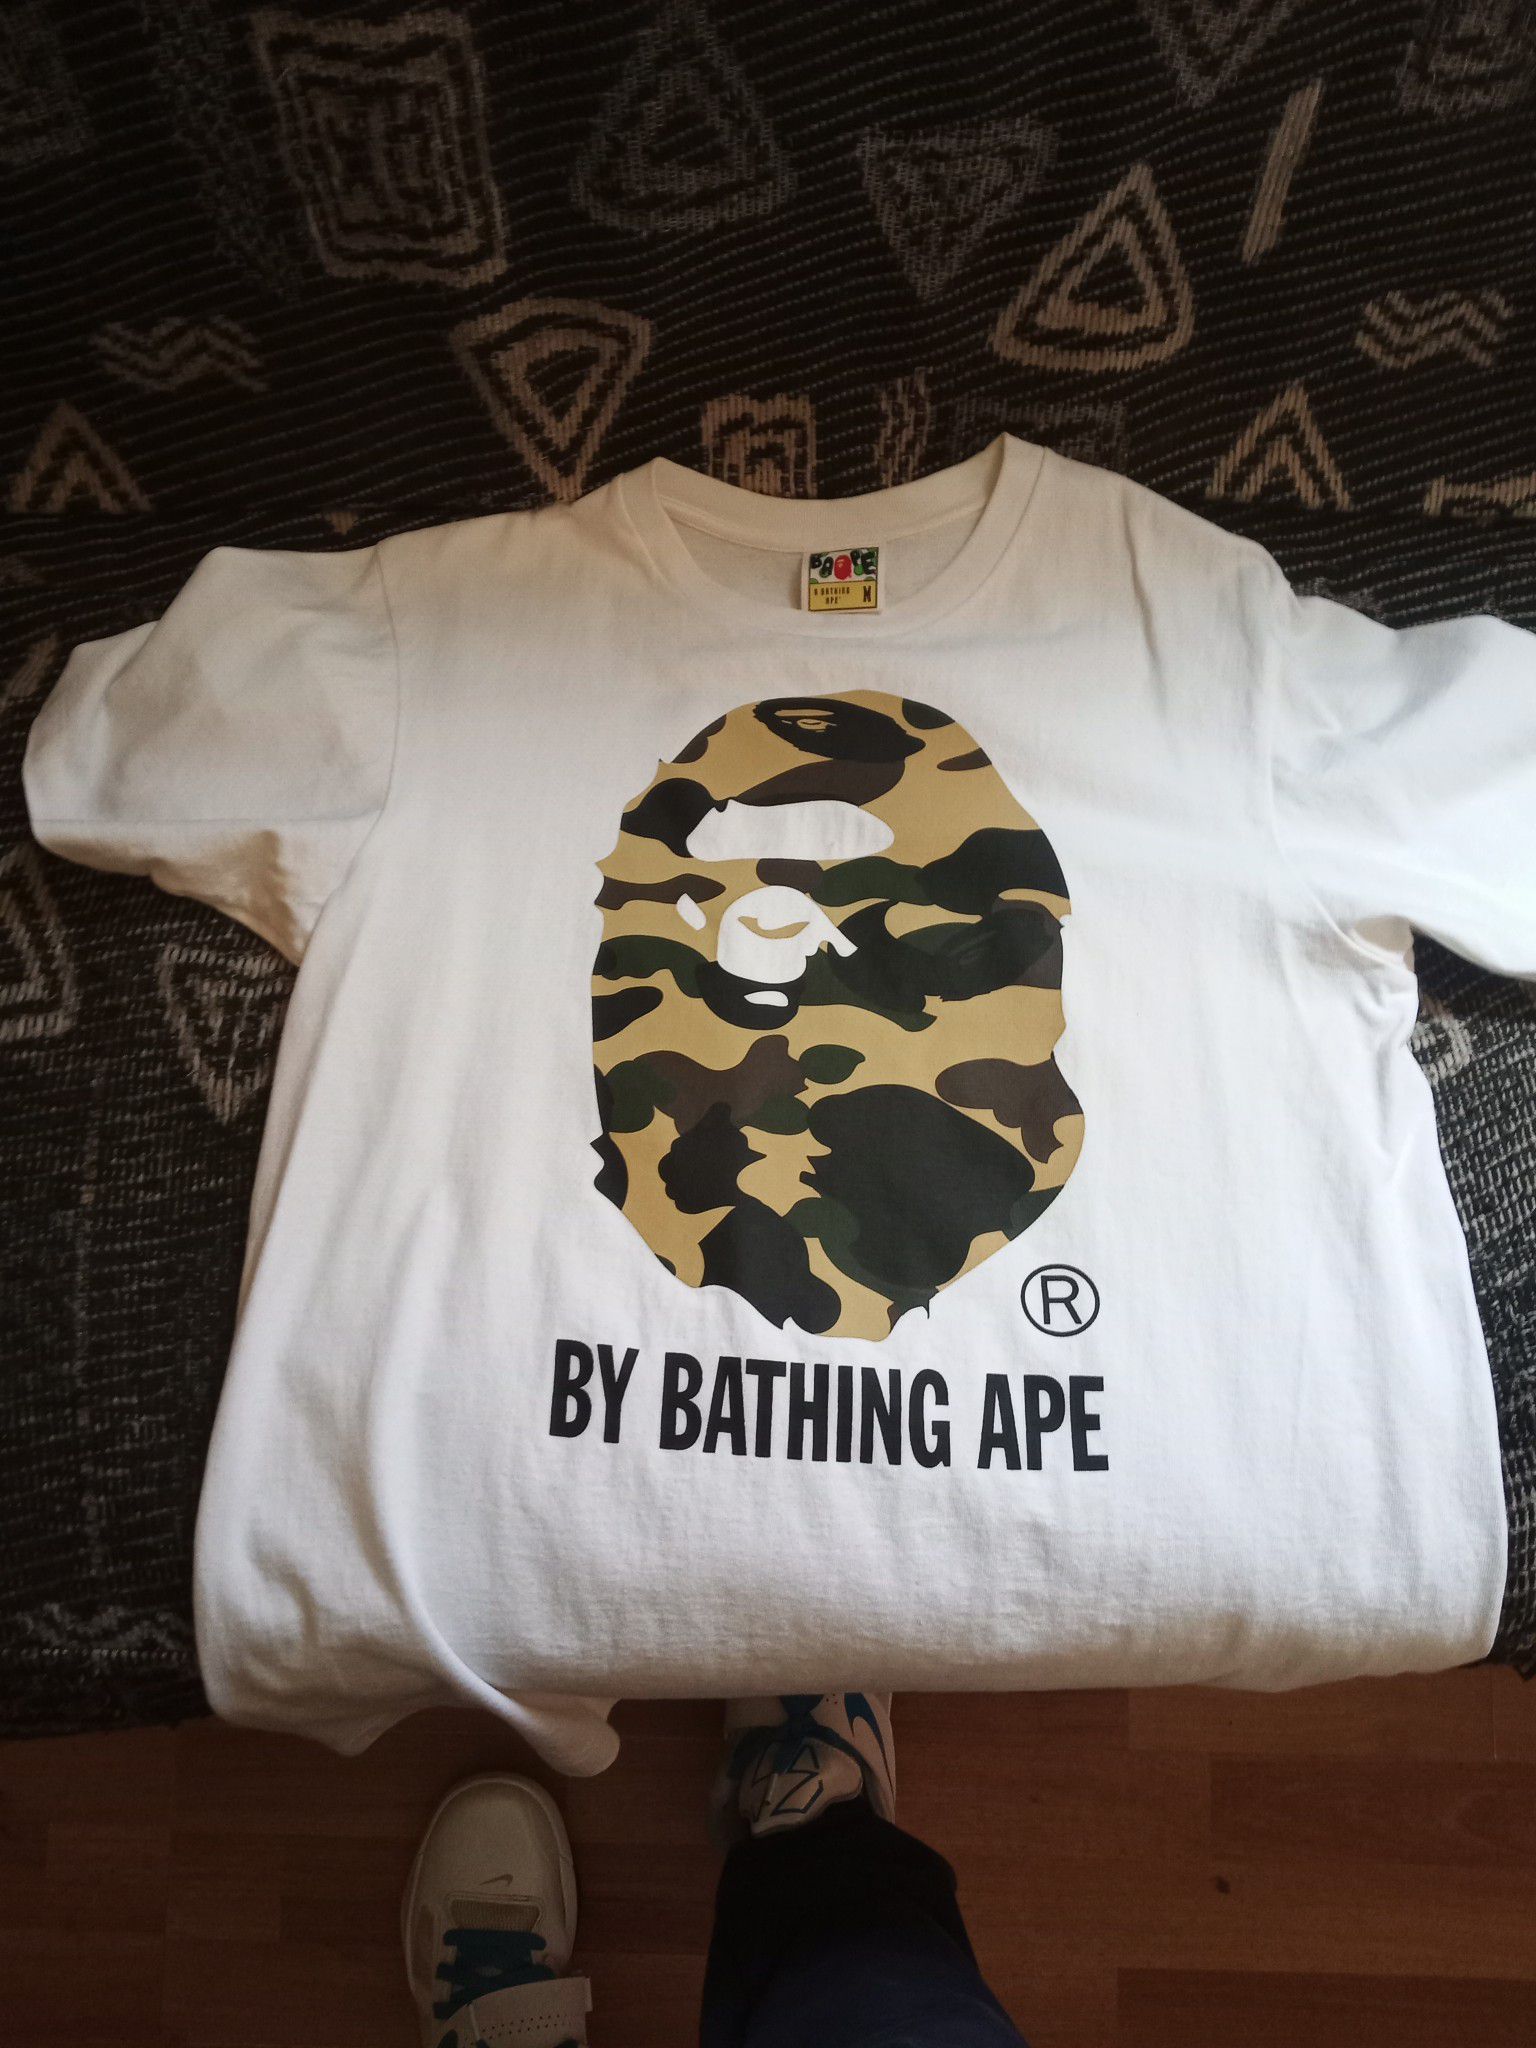 Bathing ape white and camo shirt size medium 60$